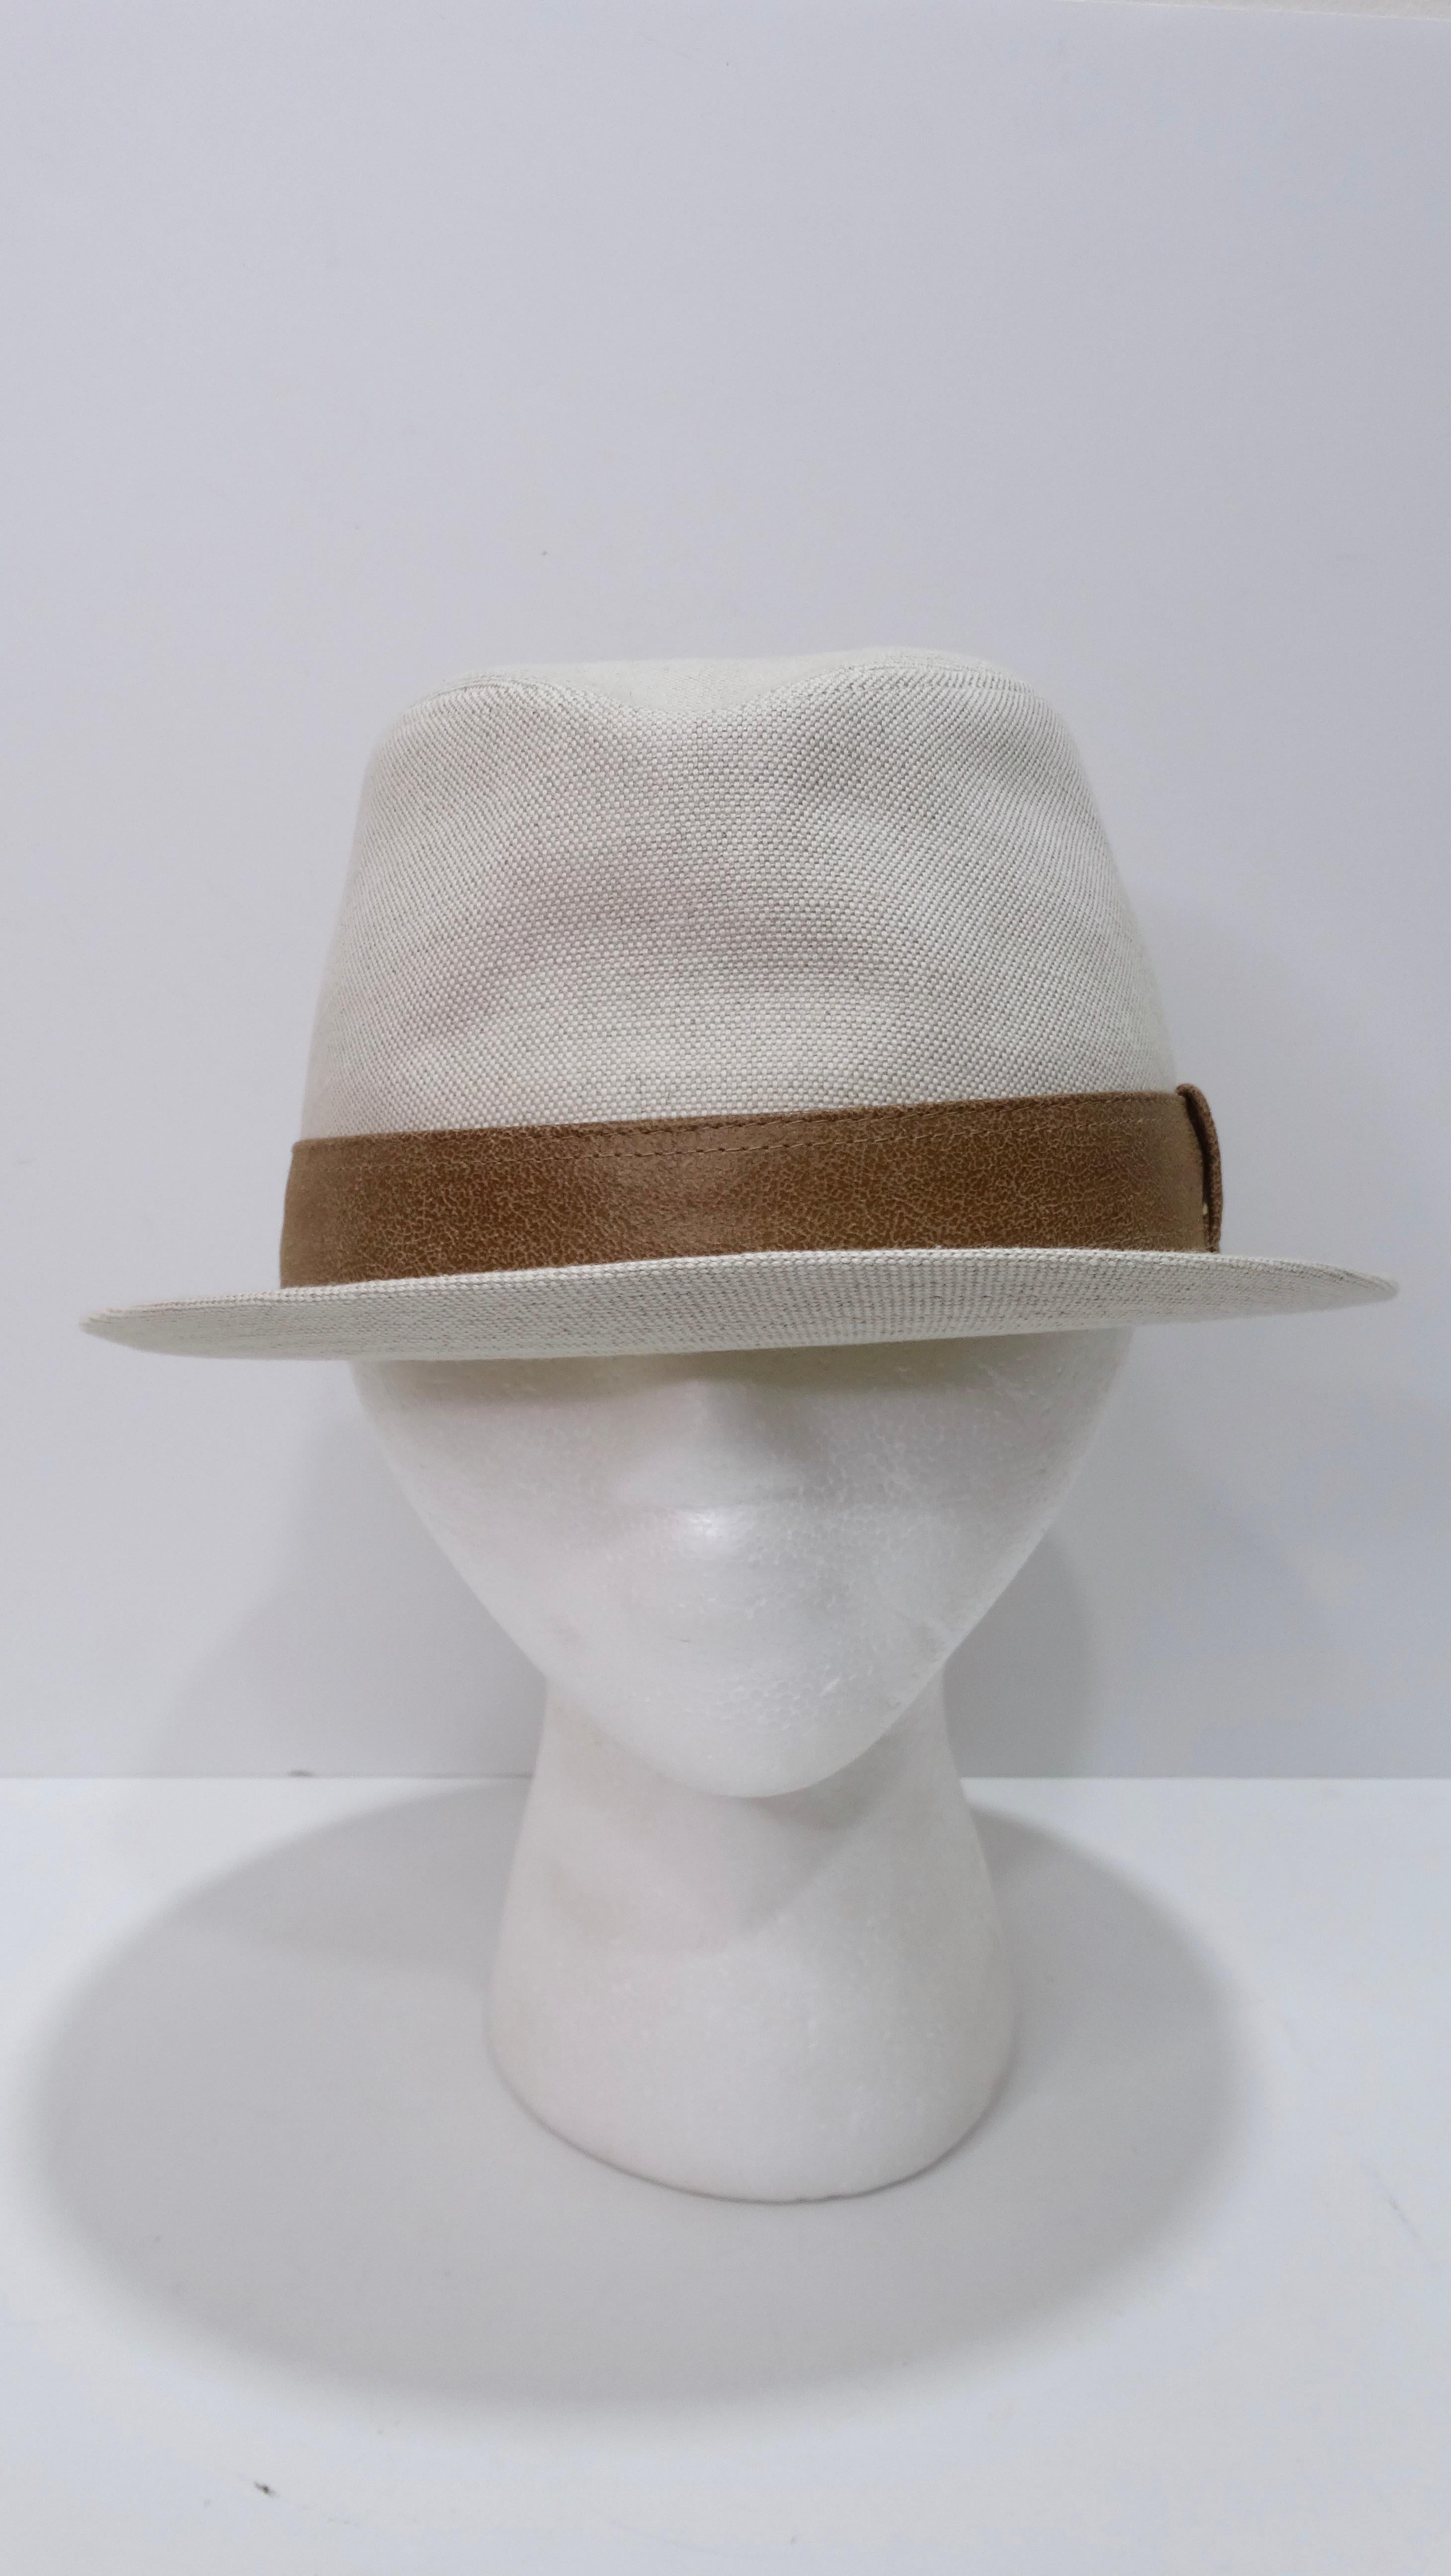 Ce chapeau Hermes blanc cassé avec une sangle marron classique est un look simpliste et stylé qui fait preuve d'élégance et de classe. Faisant ressortir les nuances féminines et masculines, ce chapeau peut être porté par n'importe quel sexe. Le